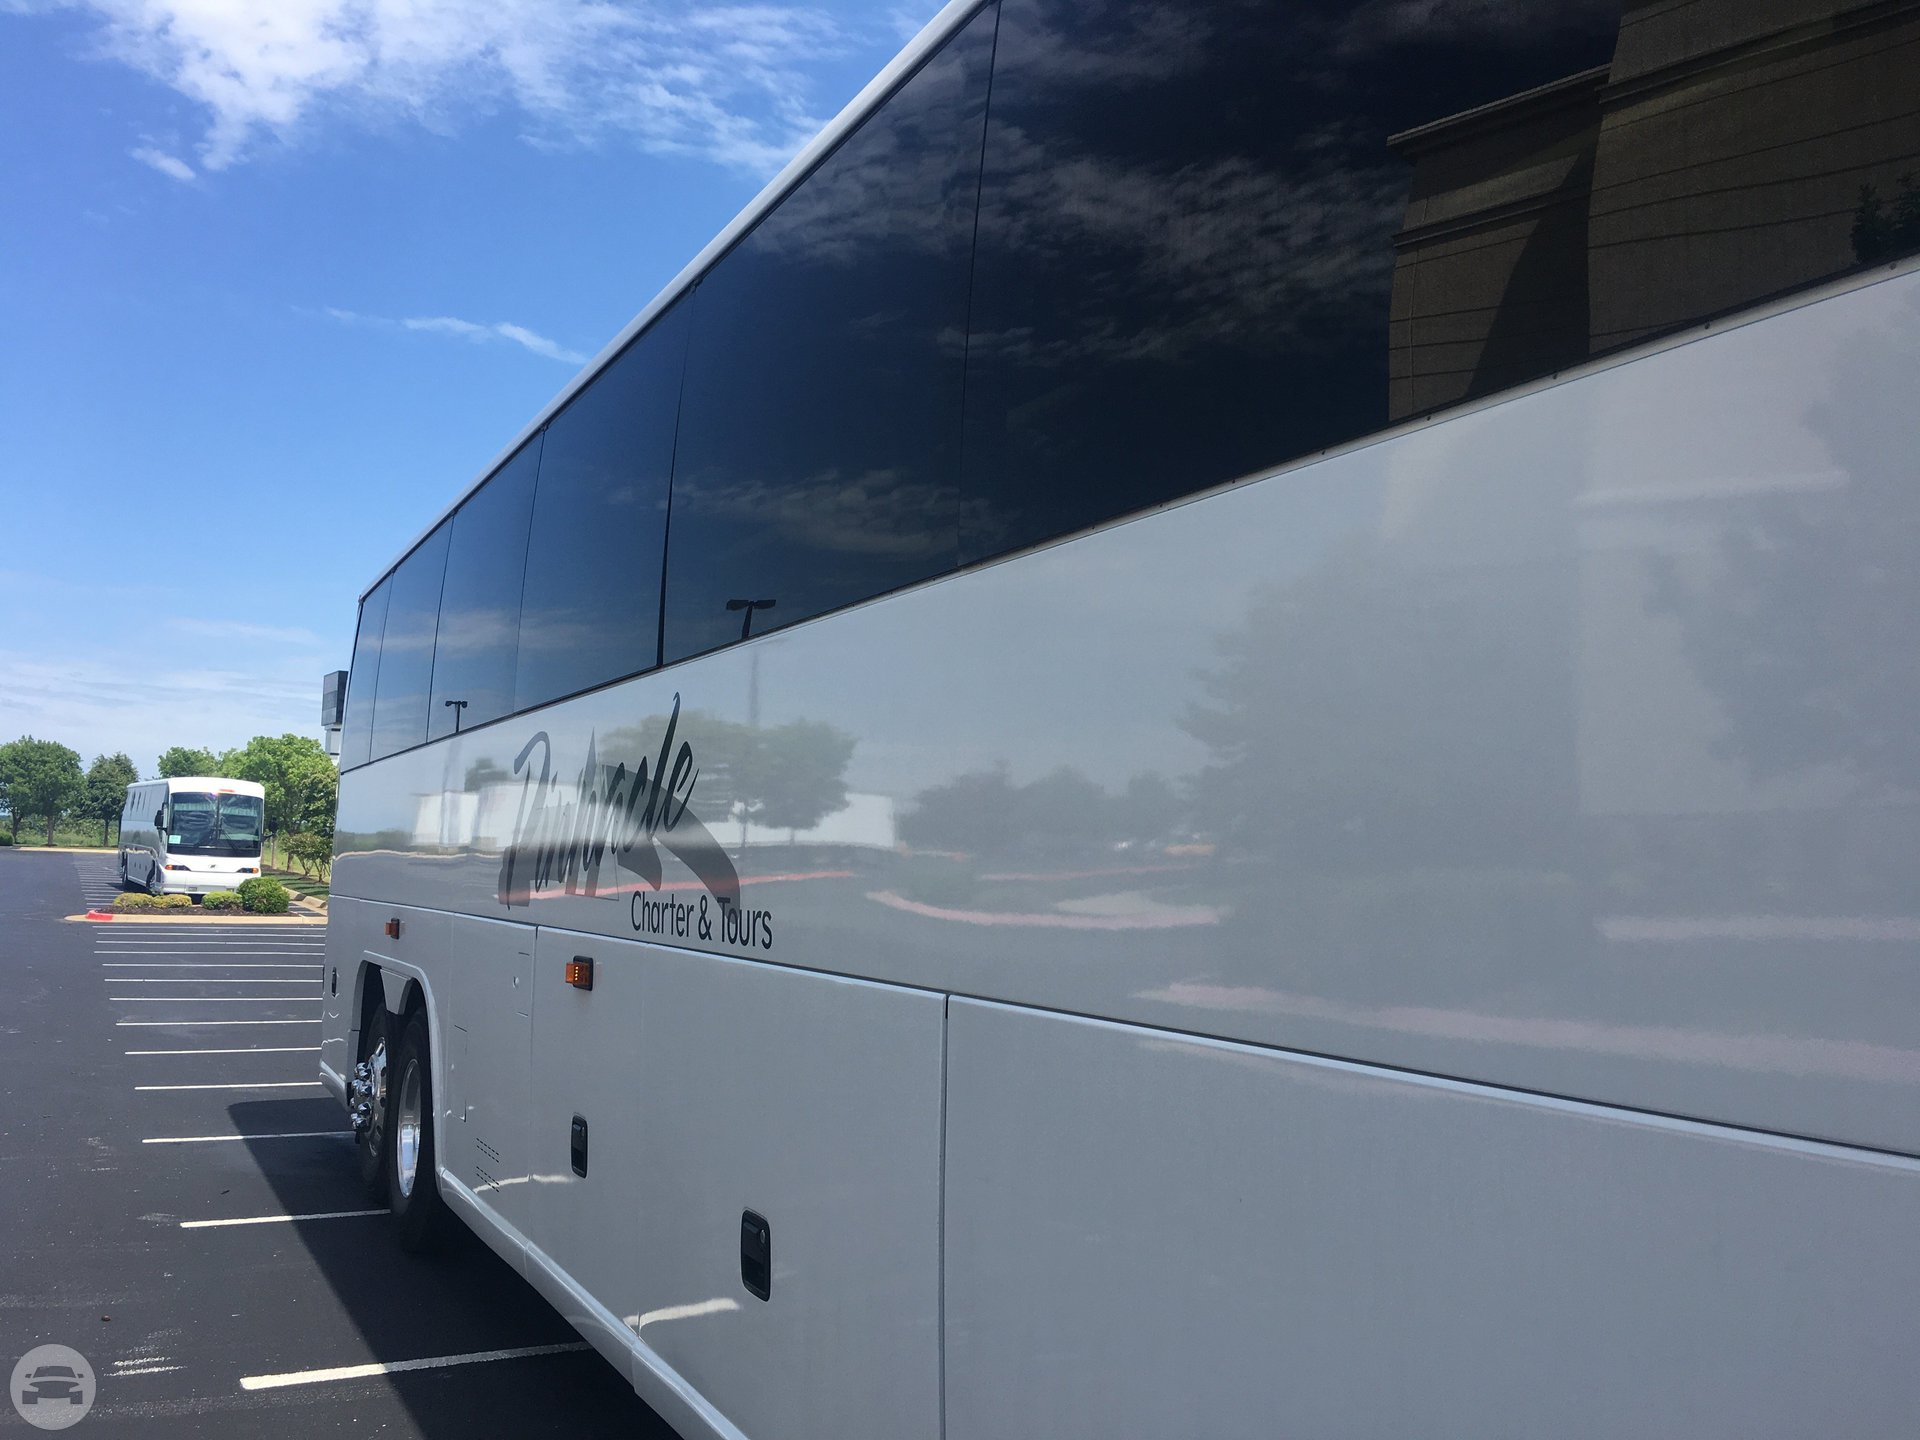 54 Passenger Motor Coach
Coach Bus /
Little Rock, AR

 / Hourly $0.00
